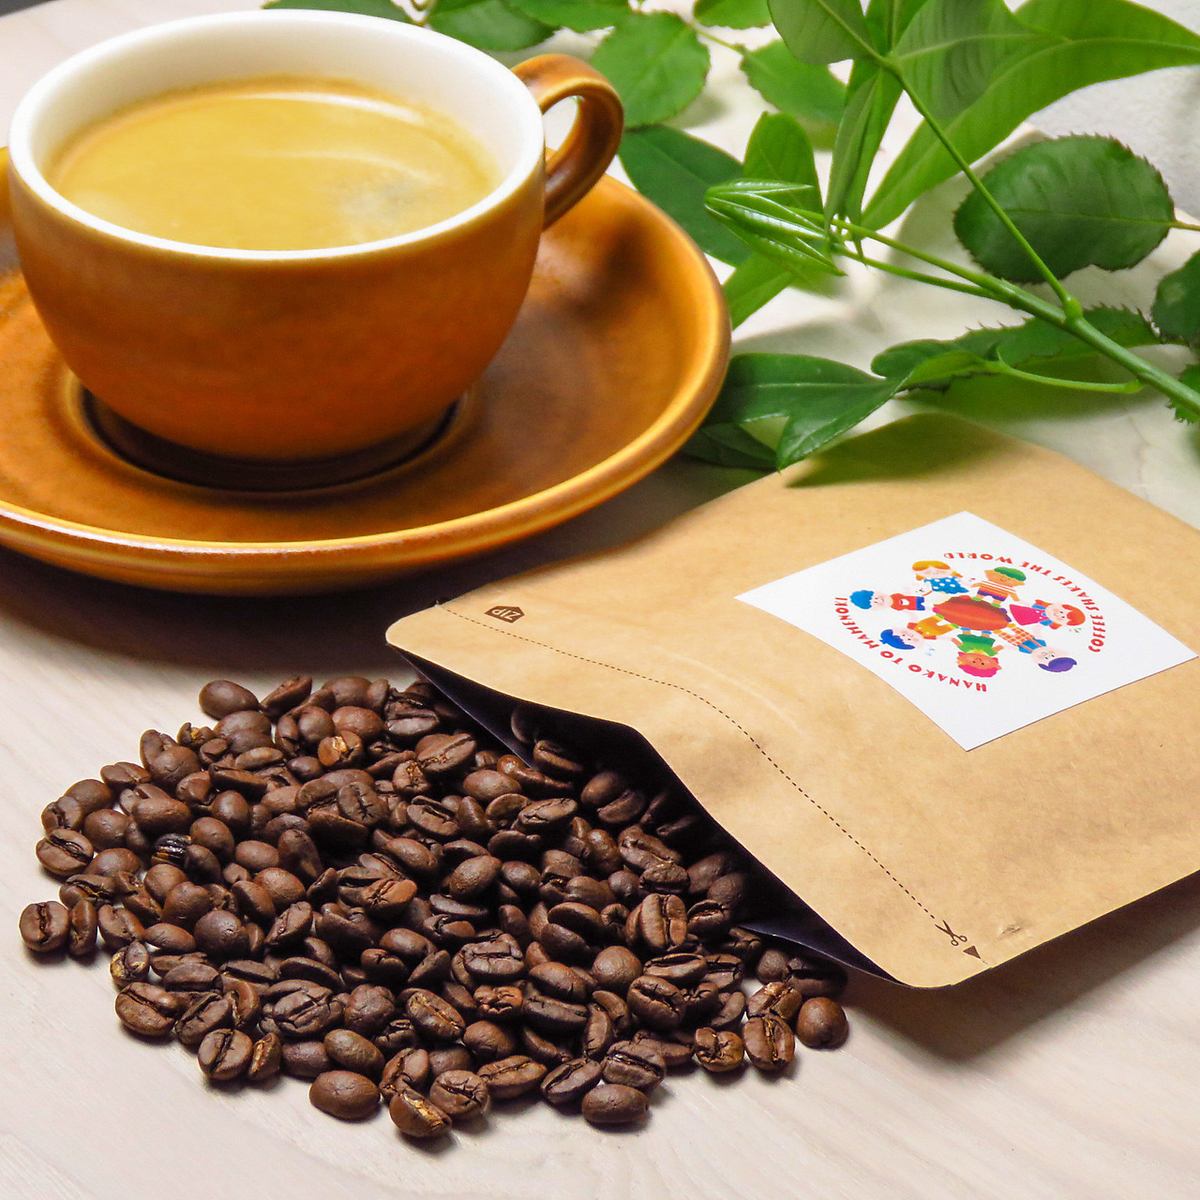 精心挑選的咖啡豆每天在店內烘焙 ★ 外賣/咖啡豆也可出售